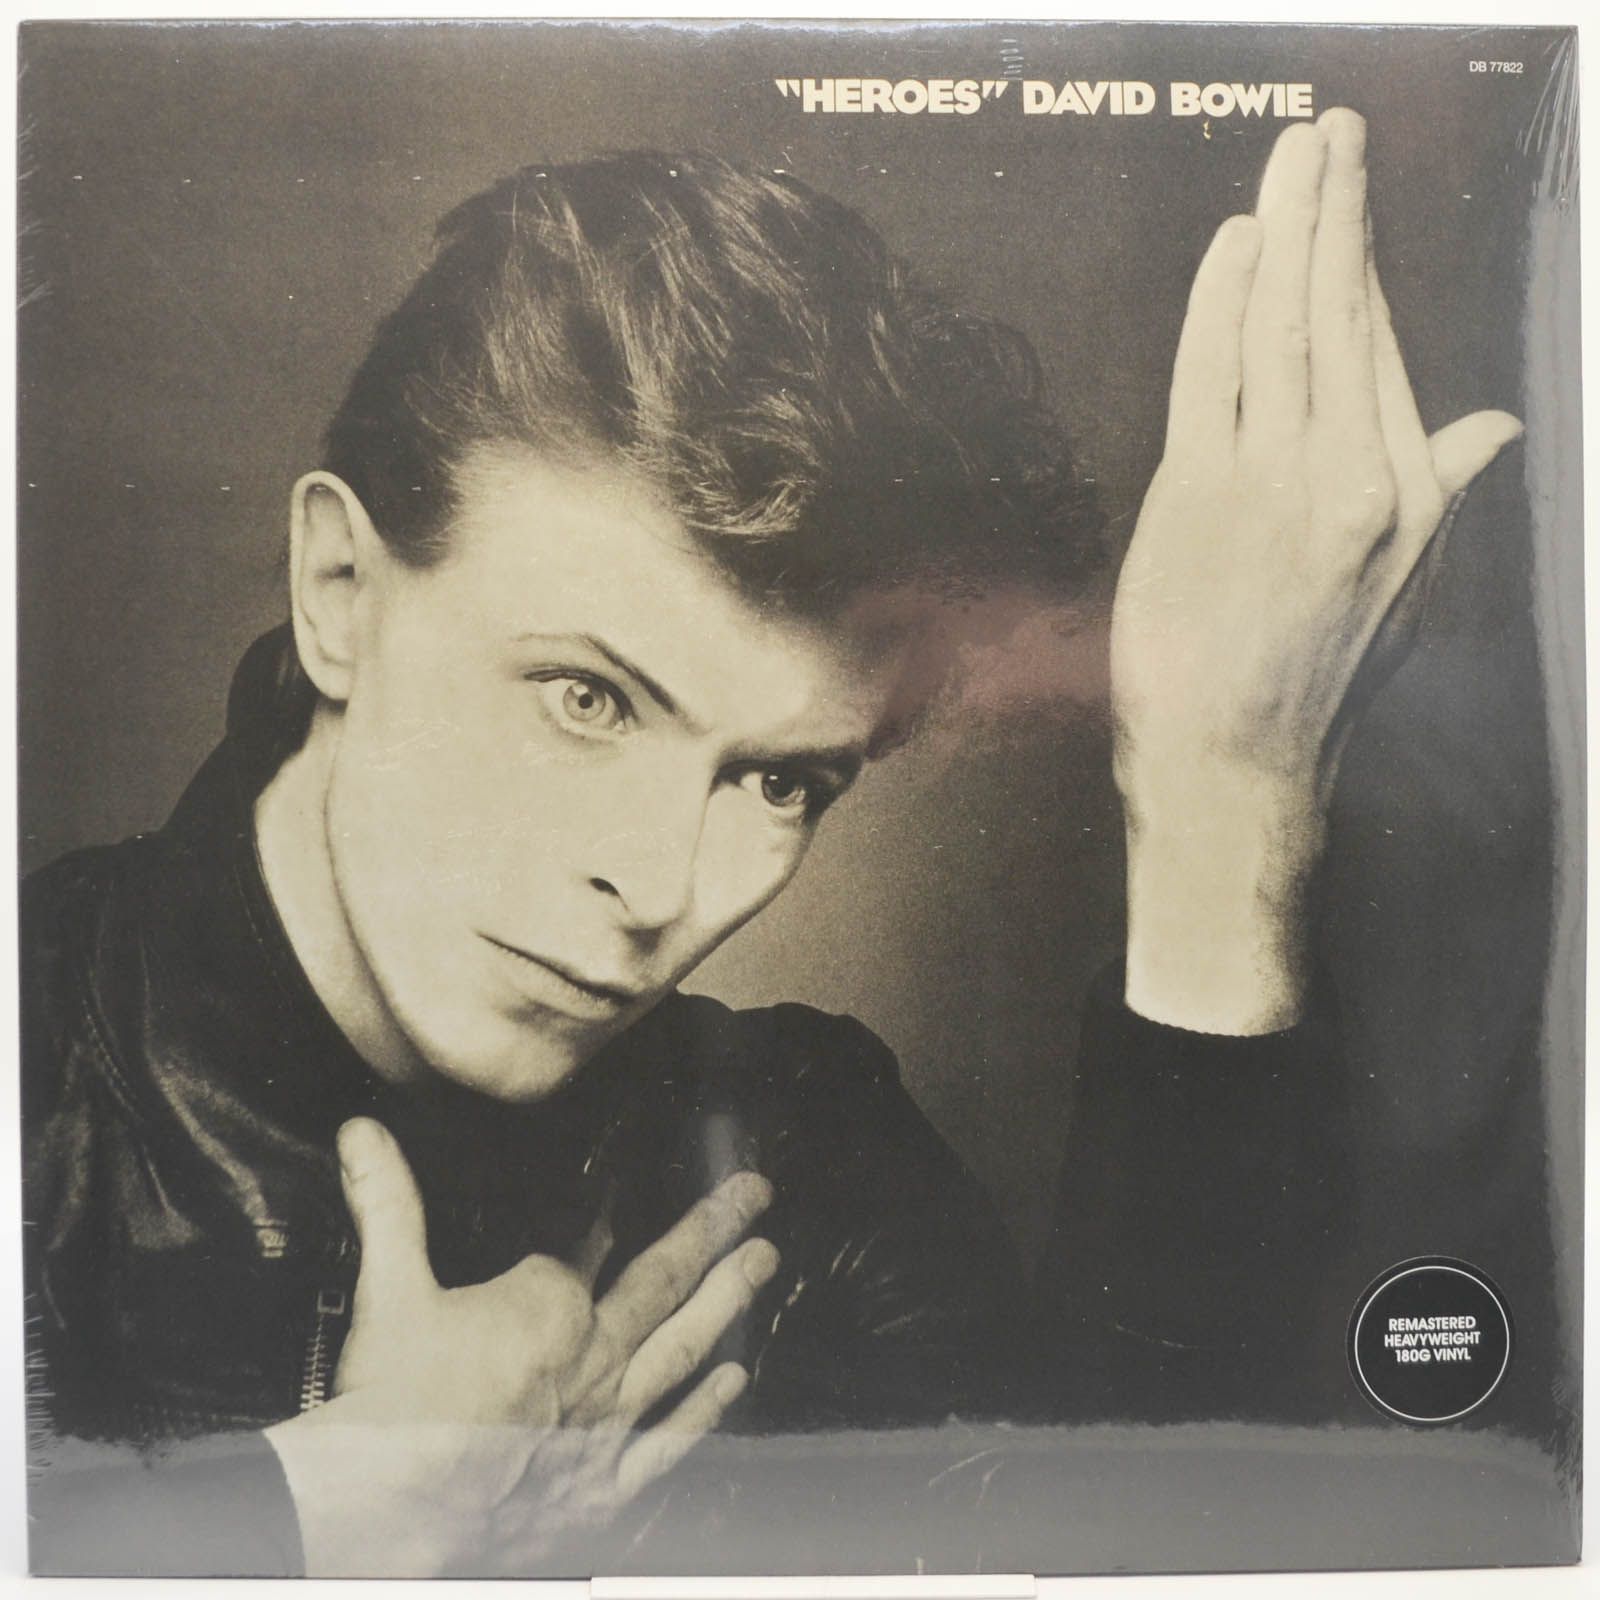 David Bowie — "Heroes", 1977